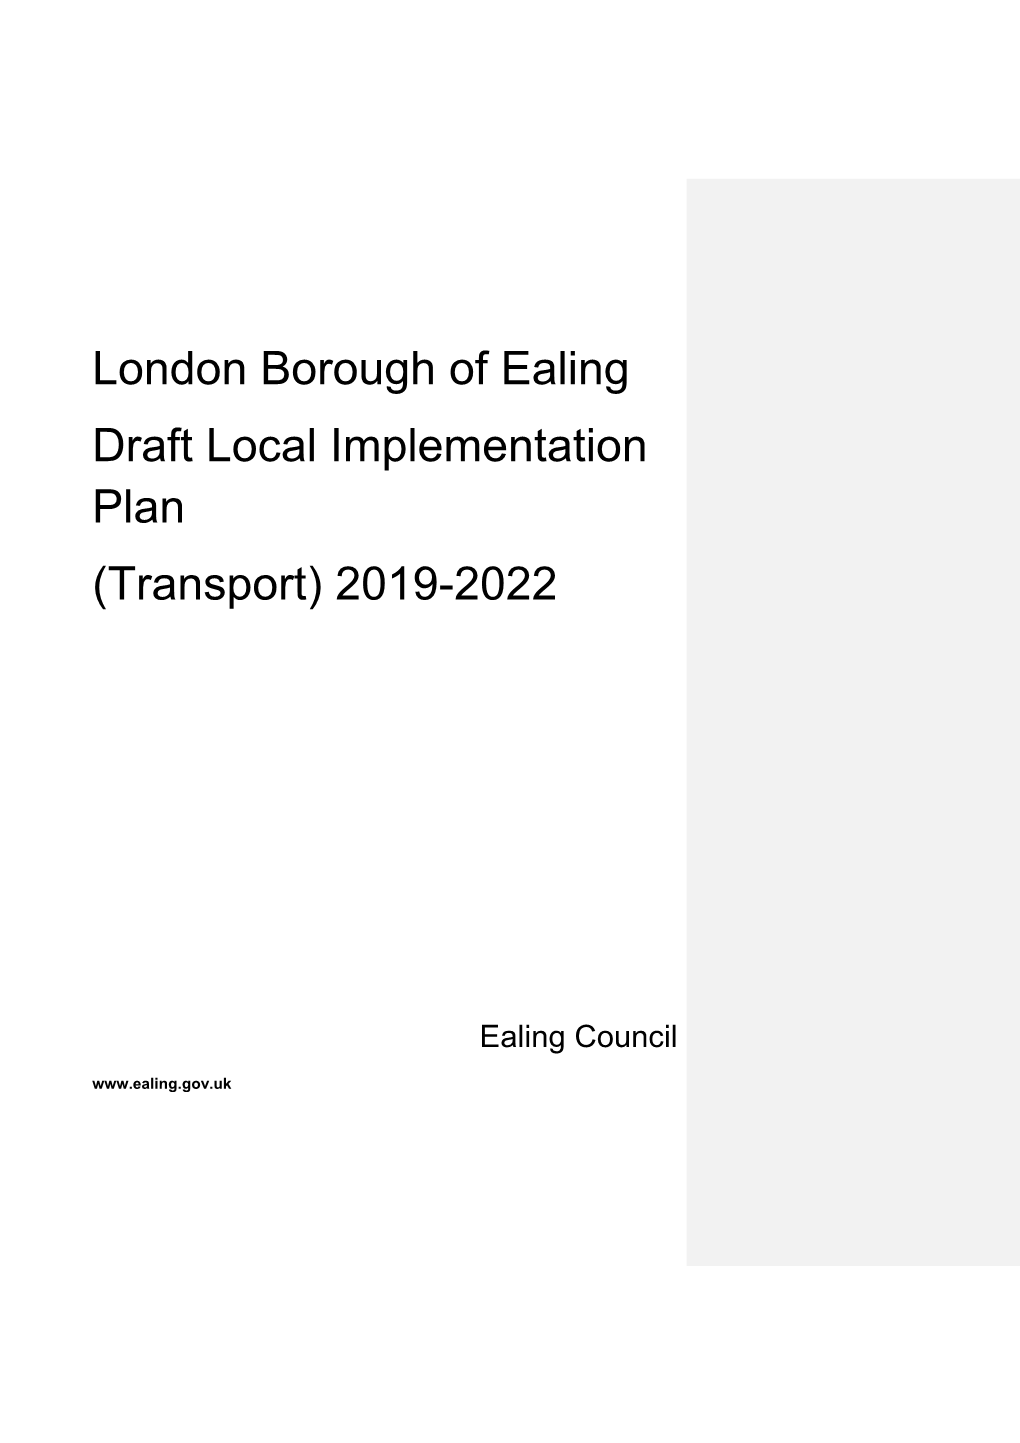 London Borough of Ealing Draft Local Implementation Plan (Transport) 2019-2022